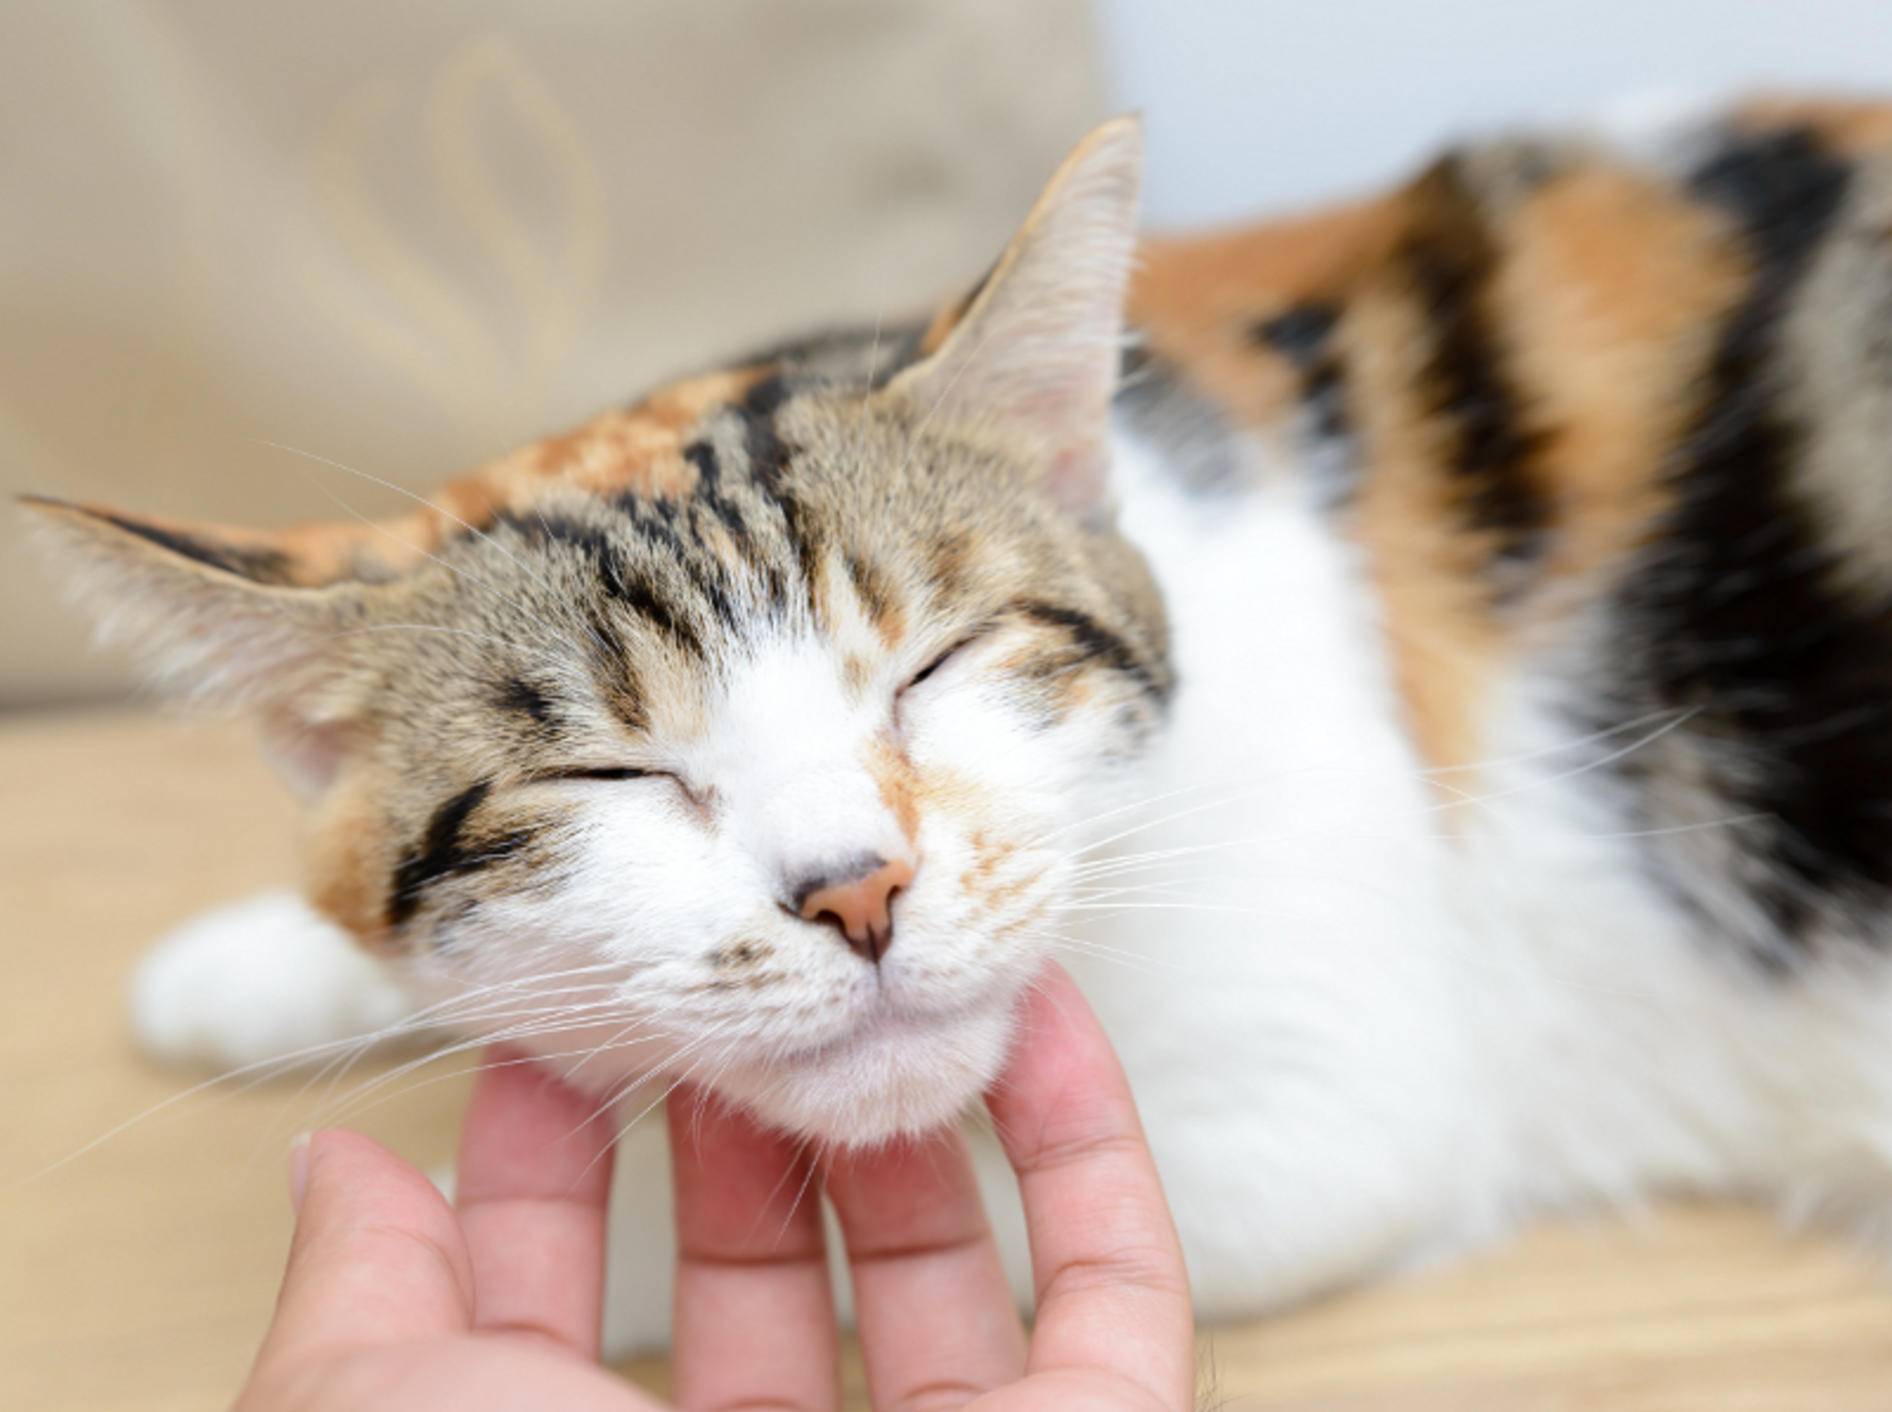 Nach dem Kennenlernen genießen es die meisten Katzen, ausgiebig gestreichelt zu werden – Shutterstock / TungCheung